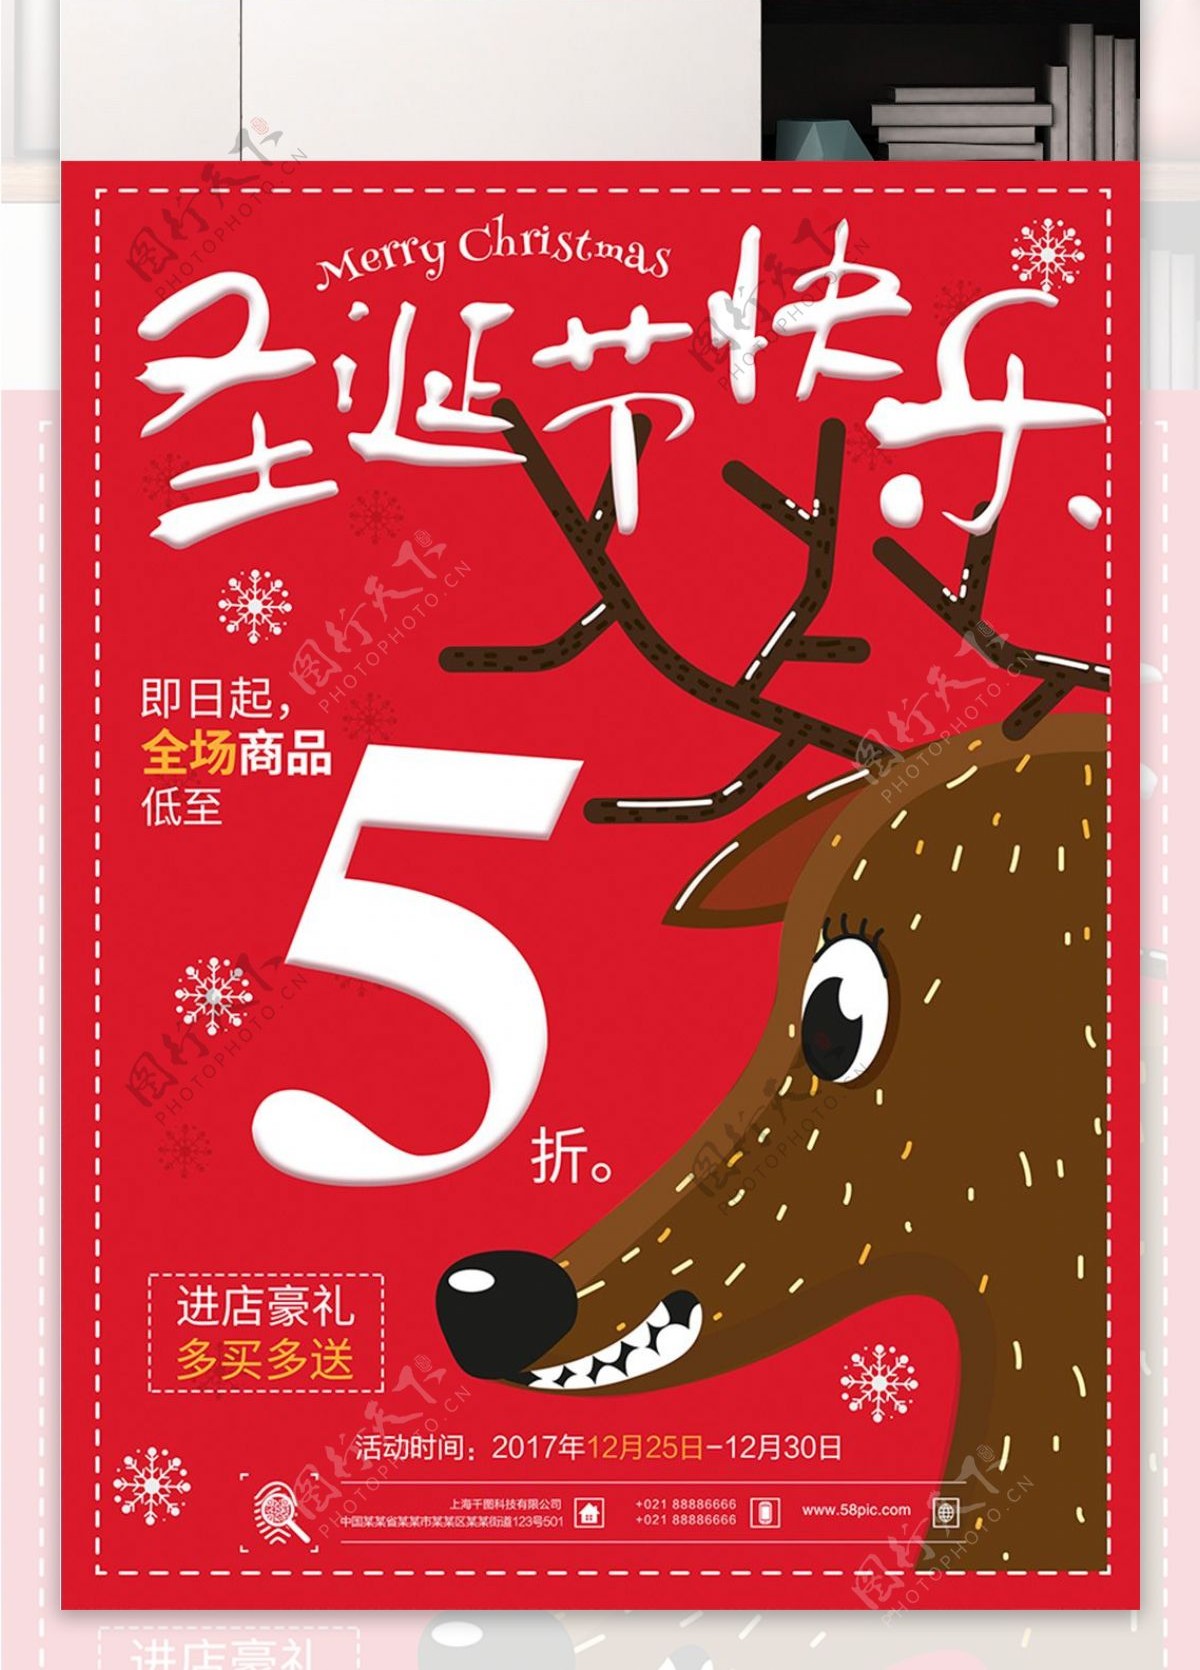 创意卡通麋鹿圣诞节促销海报